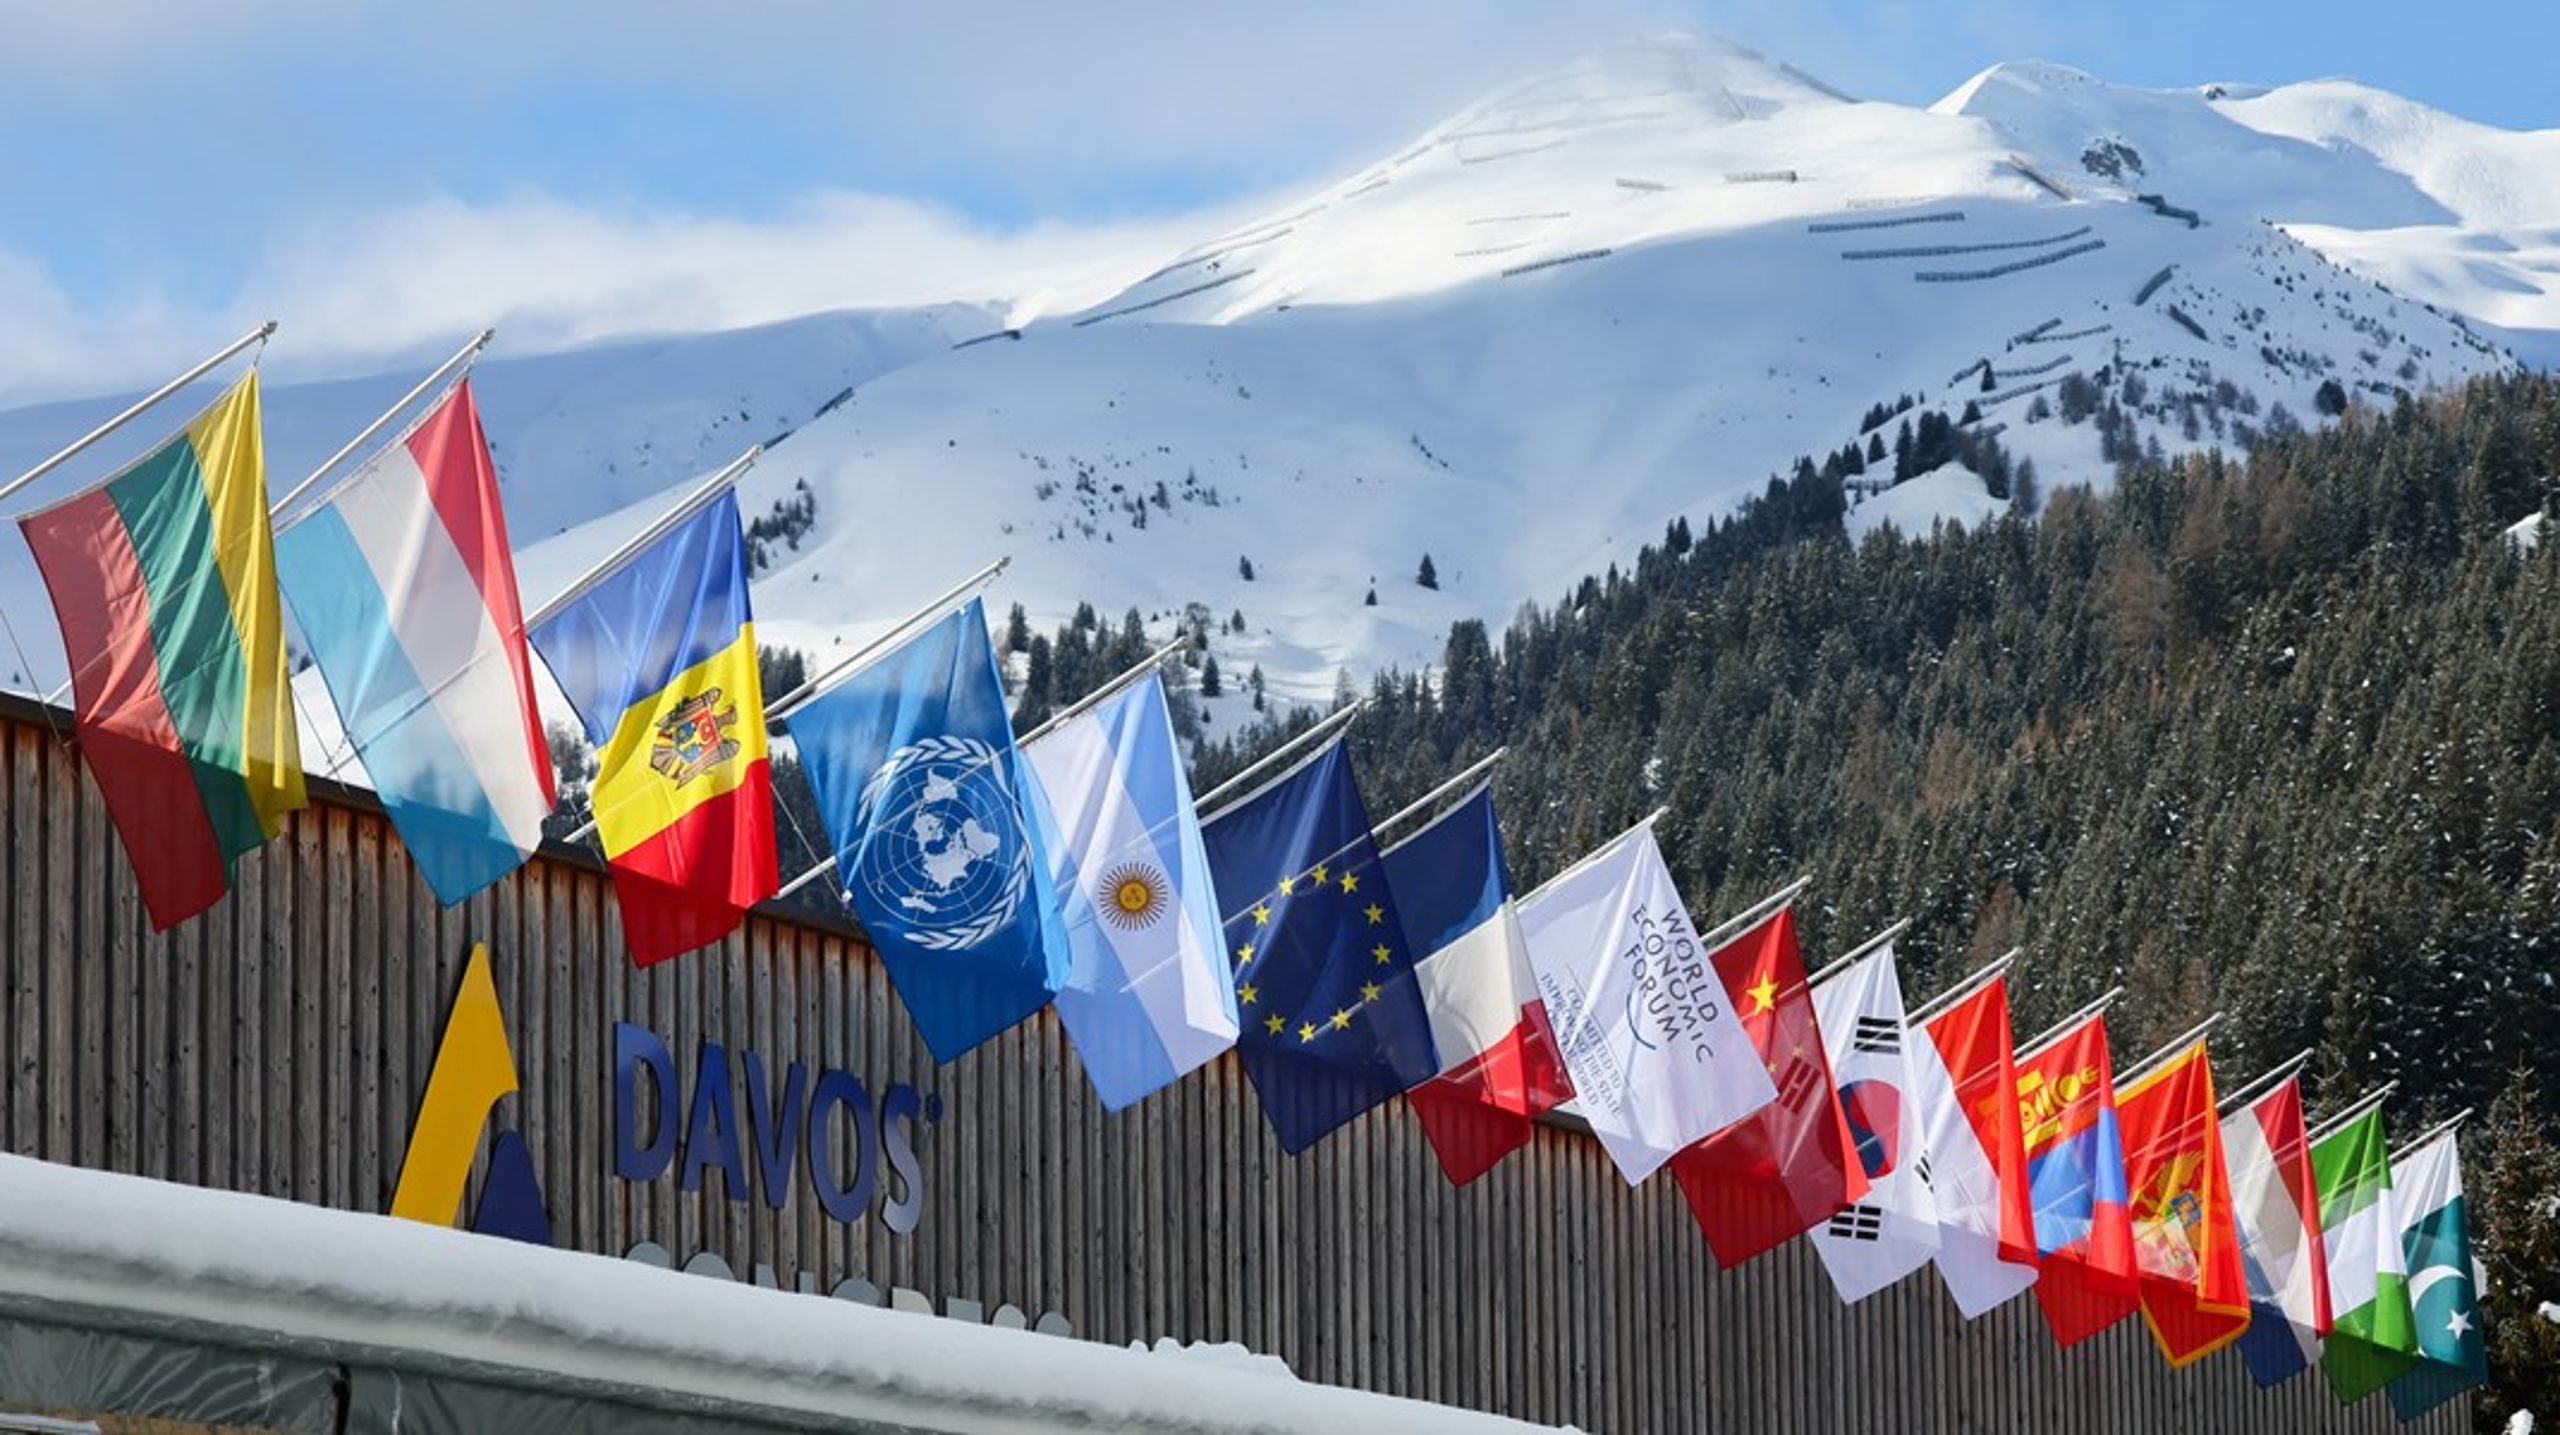 Denne uken avholdes det årlige World Economic Forum i den sveitsiske vintersportbyen Davos. Fra EU deltar hele ni kommissærer, inkludert EU-kommisjonens president Ursula von der Leyen.